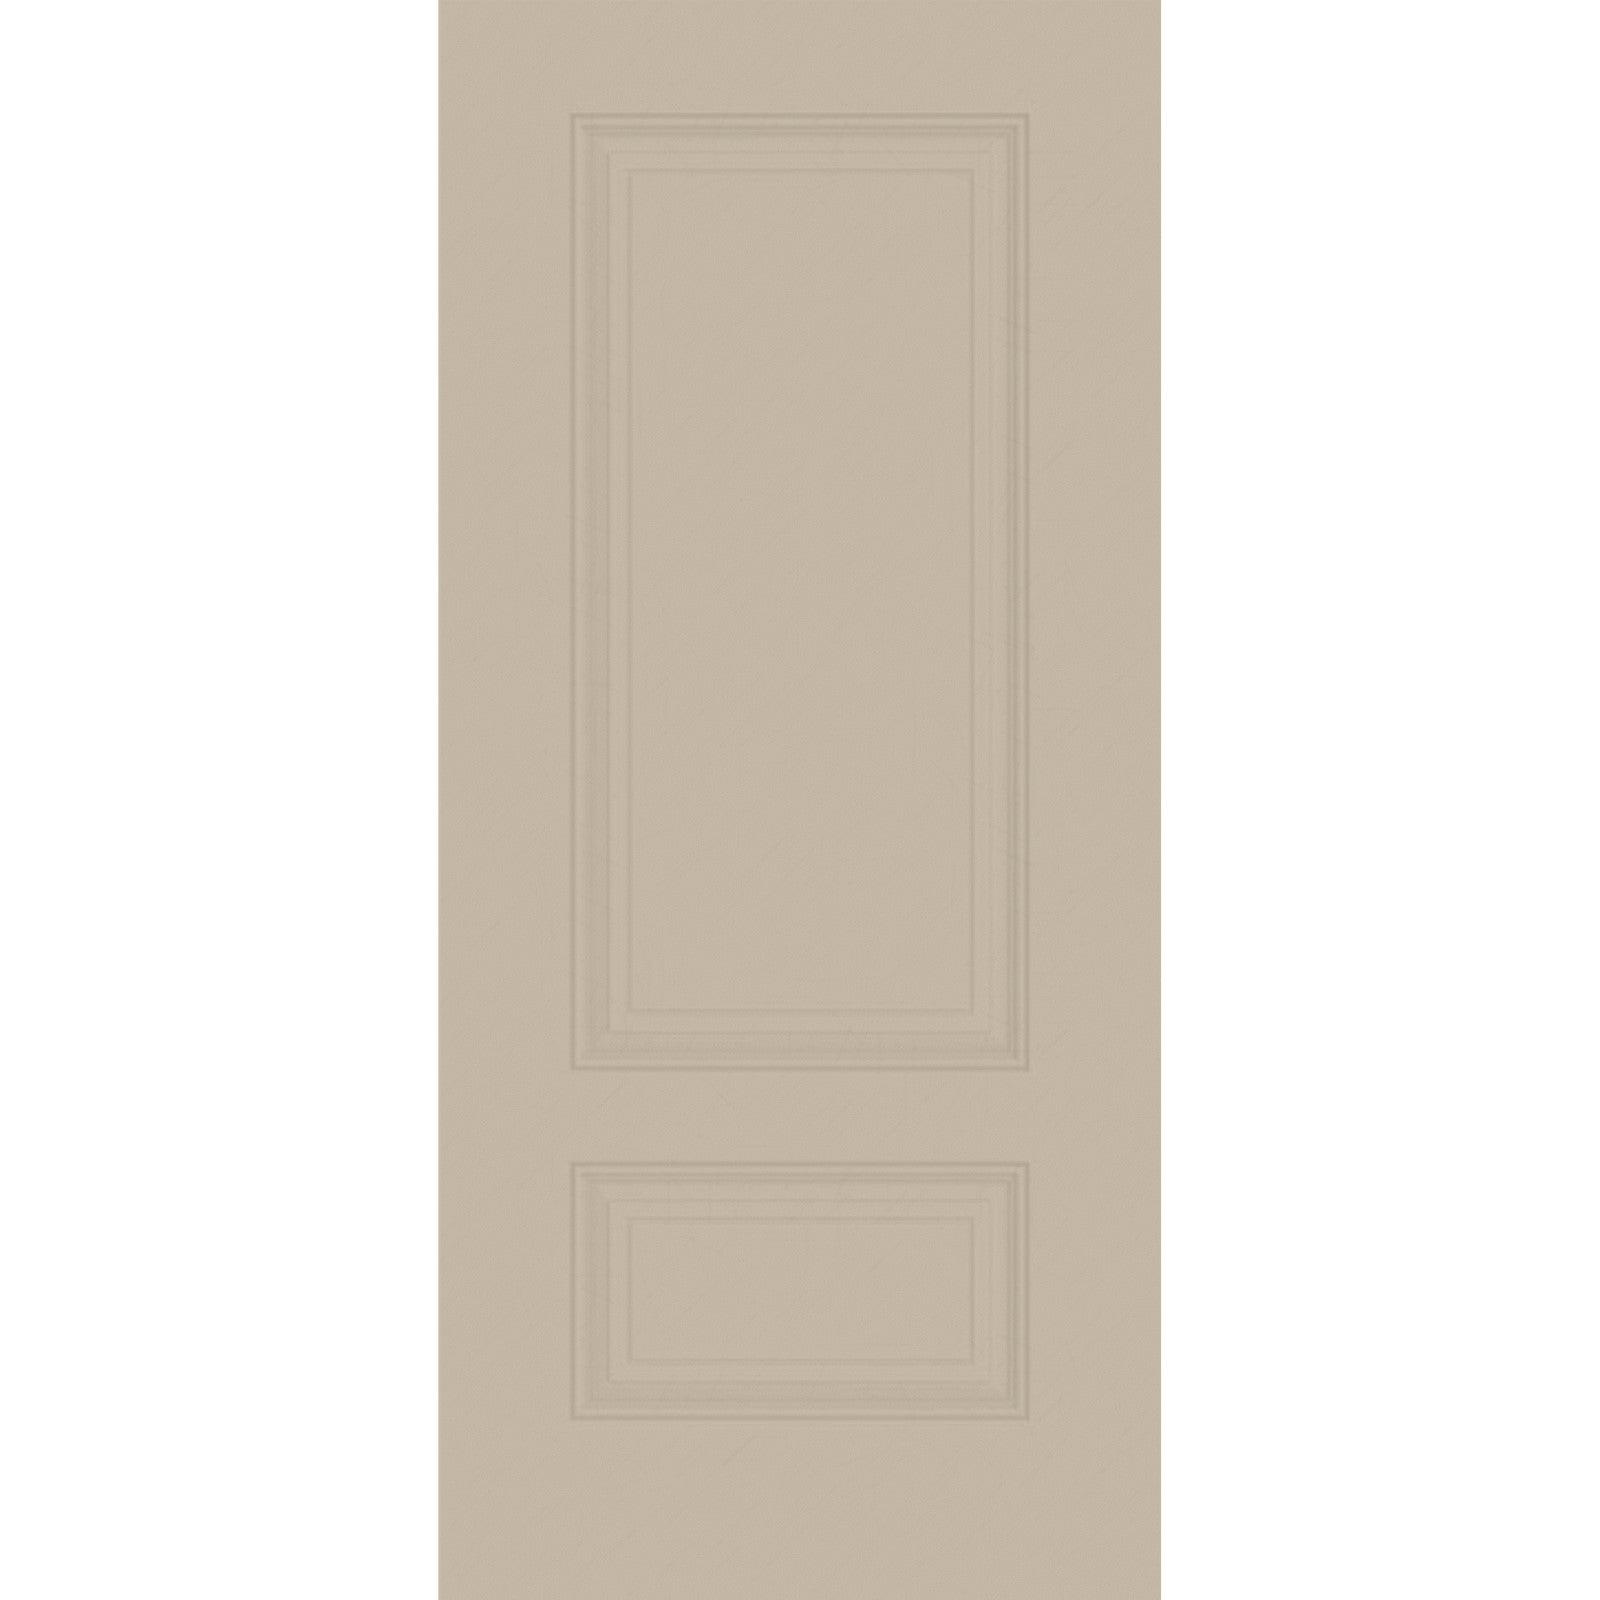 36" Mahogany Grain Fiberglass Entry Door Slab (3/4 Lite) - Pease Doors: The Door Store